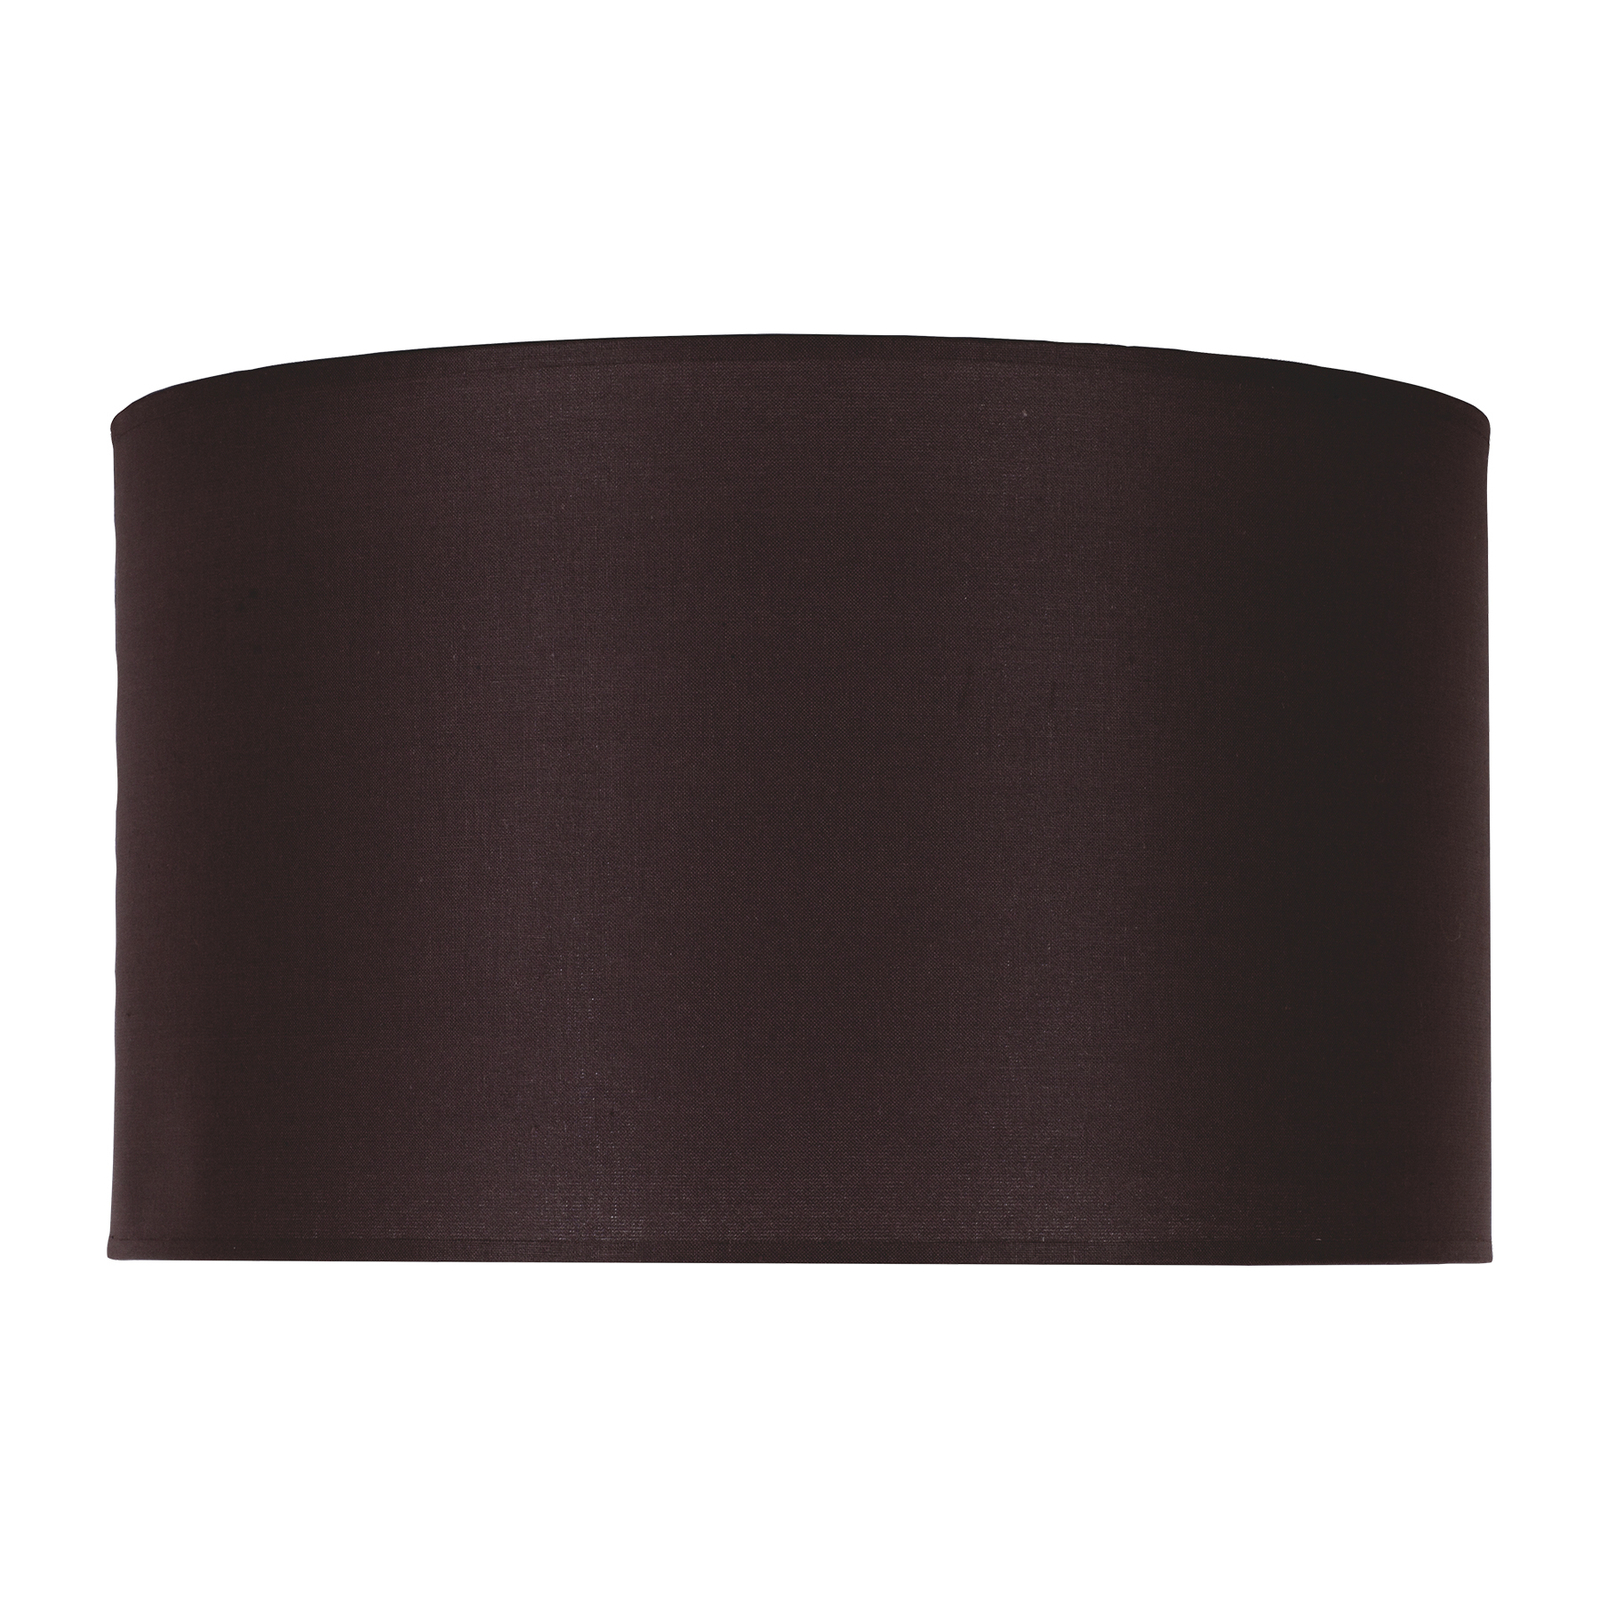 Pantalla Roller marrón oscuro Ø 50 cm altura 30 cm